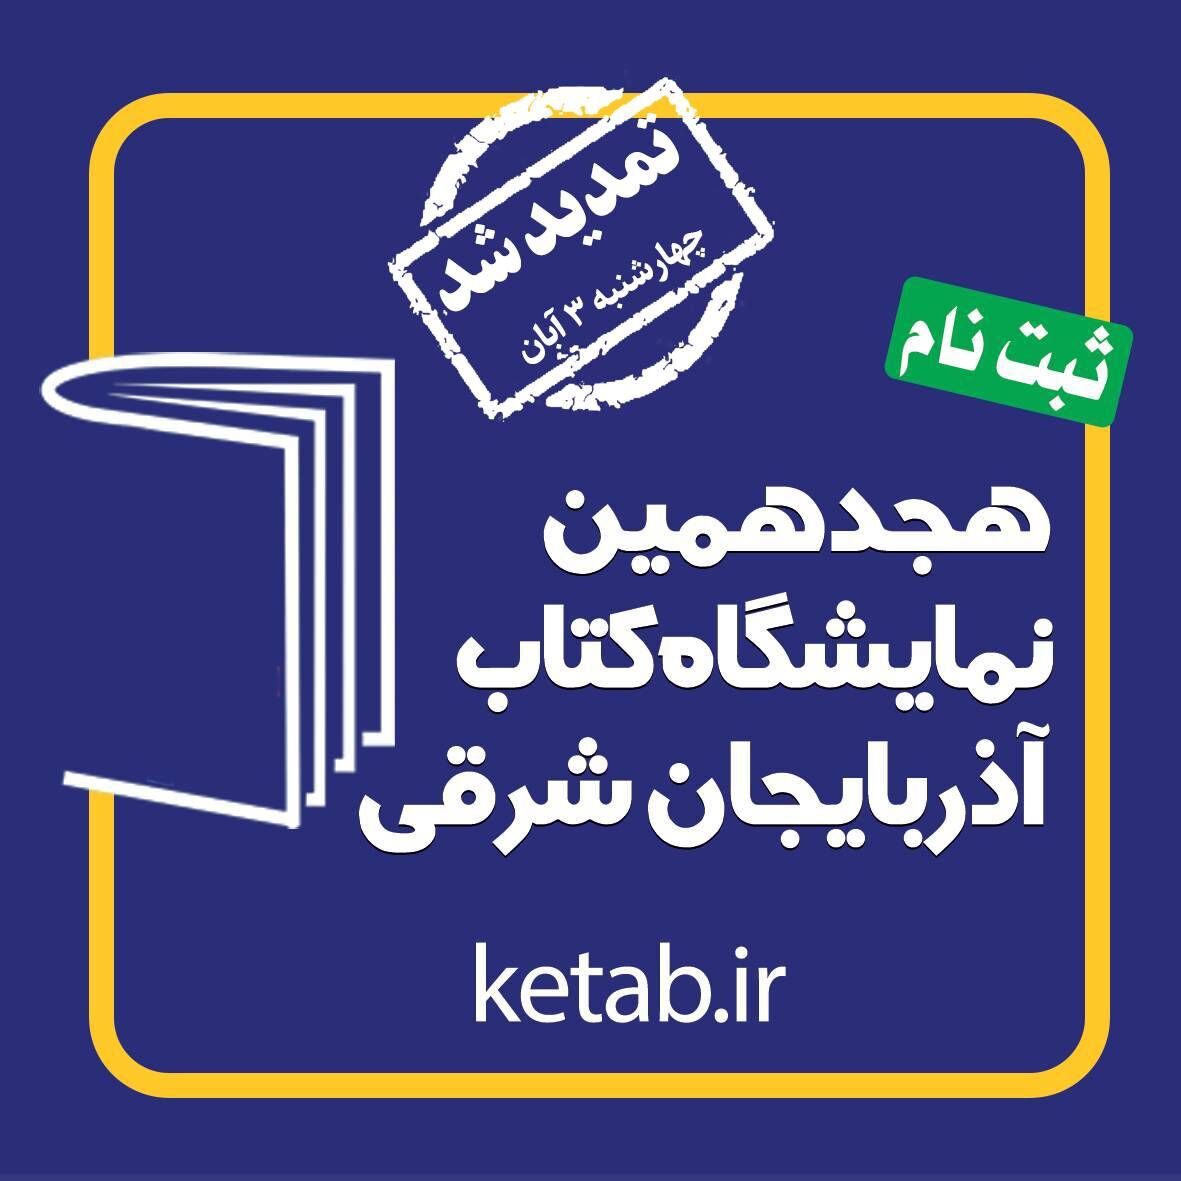 ثبت نام بیش از ۴۰۰ ناشر در نمایشگاه کتاب آذربایجان شرقی/ تمدید مهلت ثبت نام تا سوم آبان